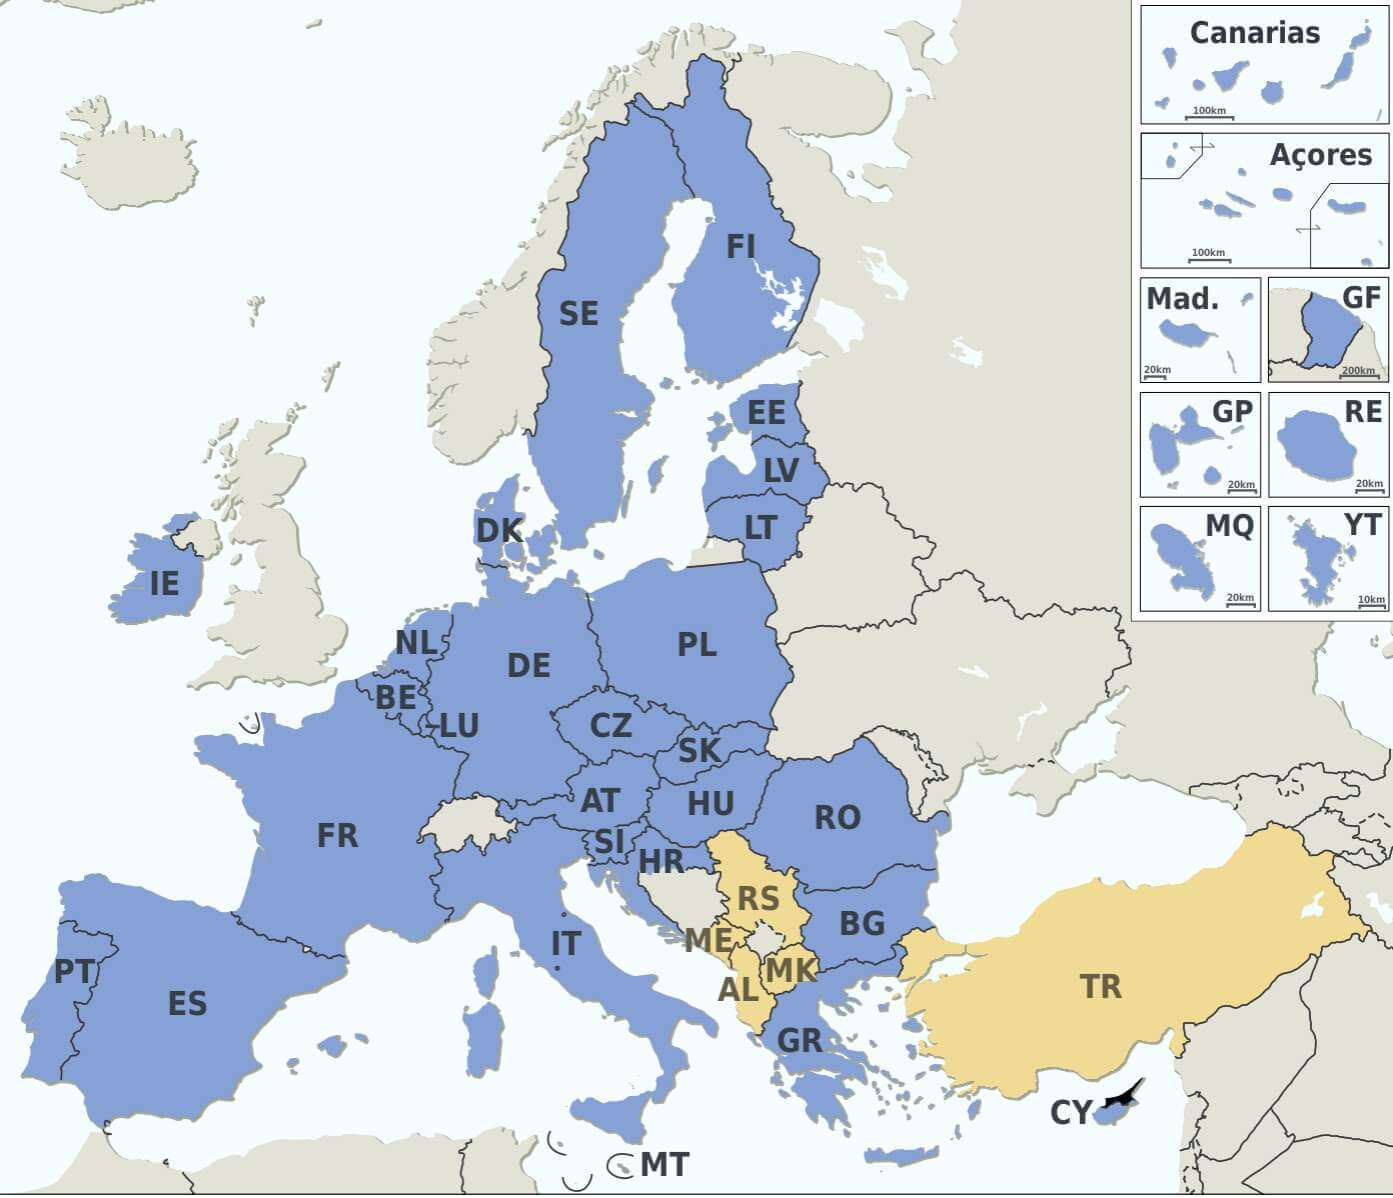 Tarile din uniunea europeana si istoria uniunii - 27 de state membre 1